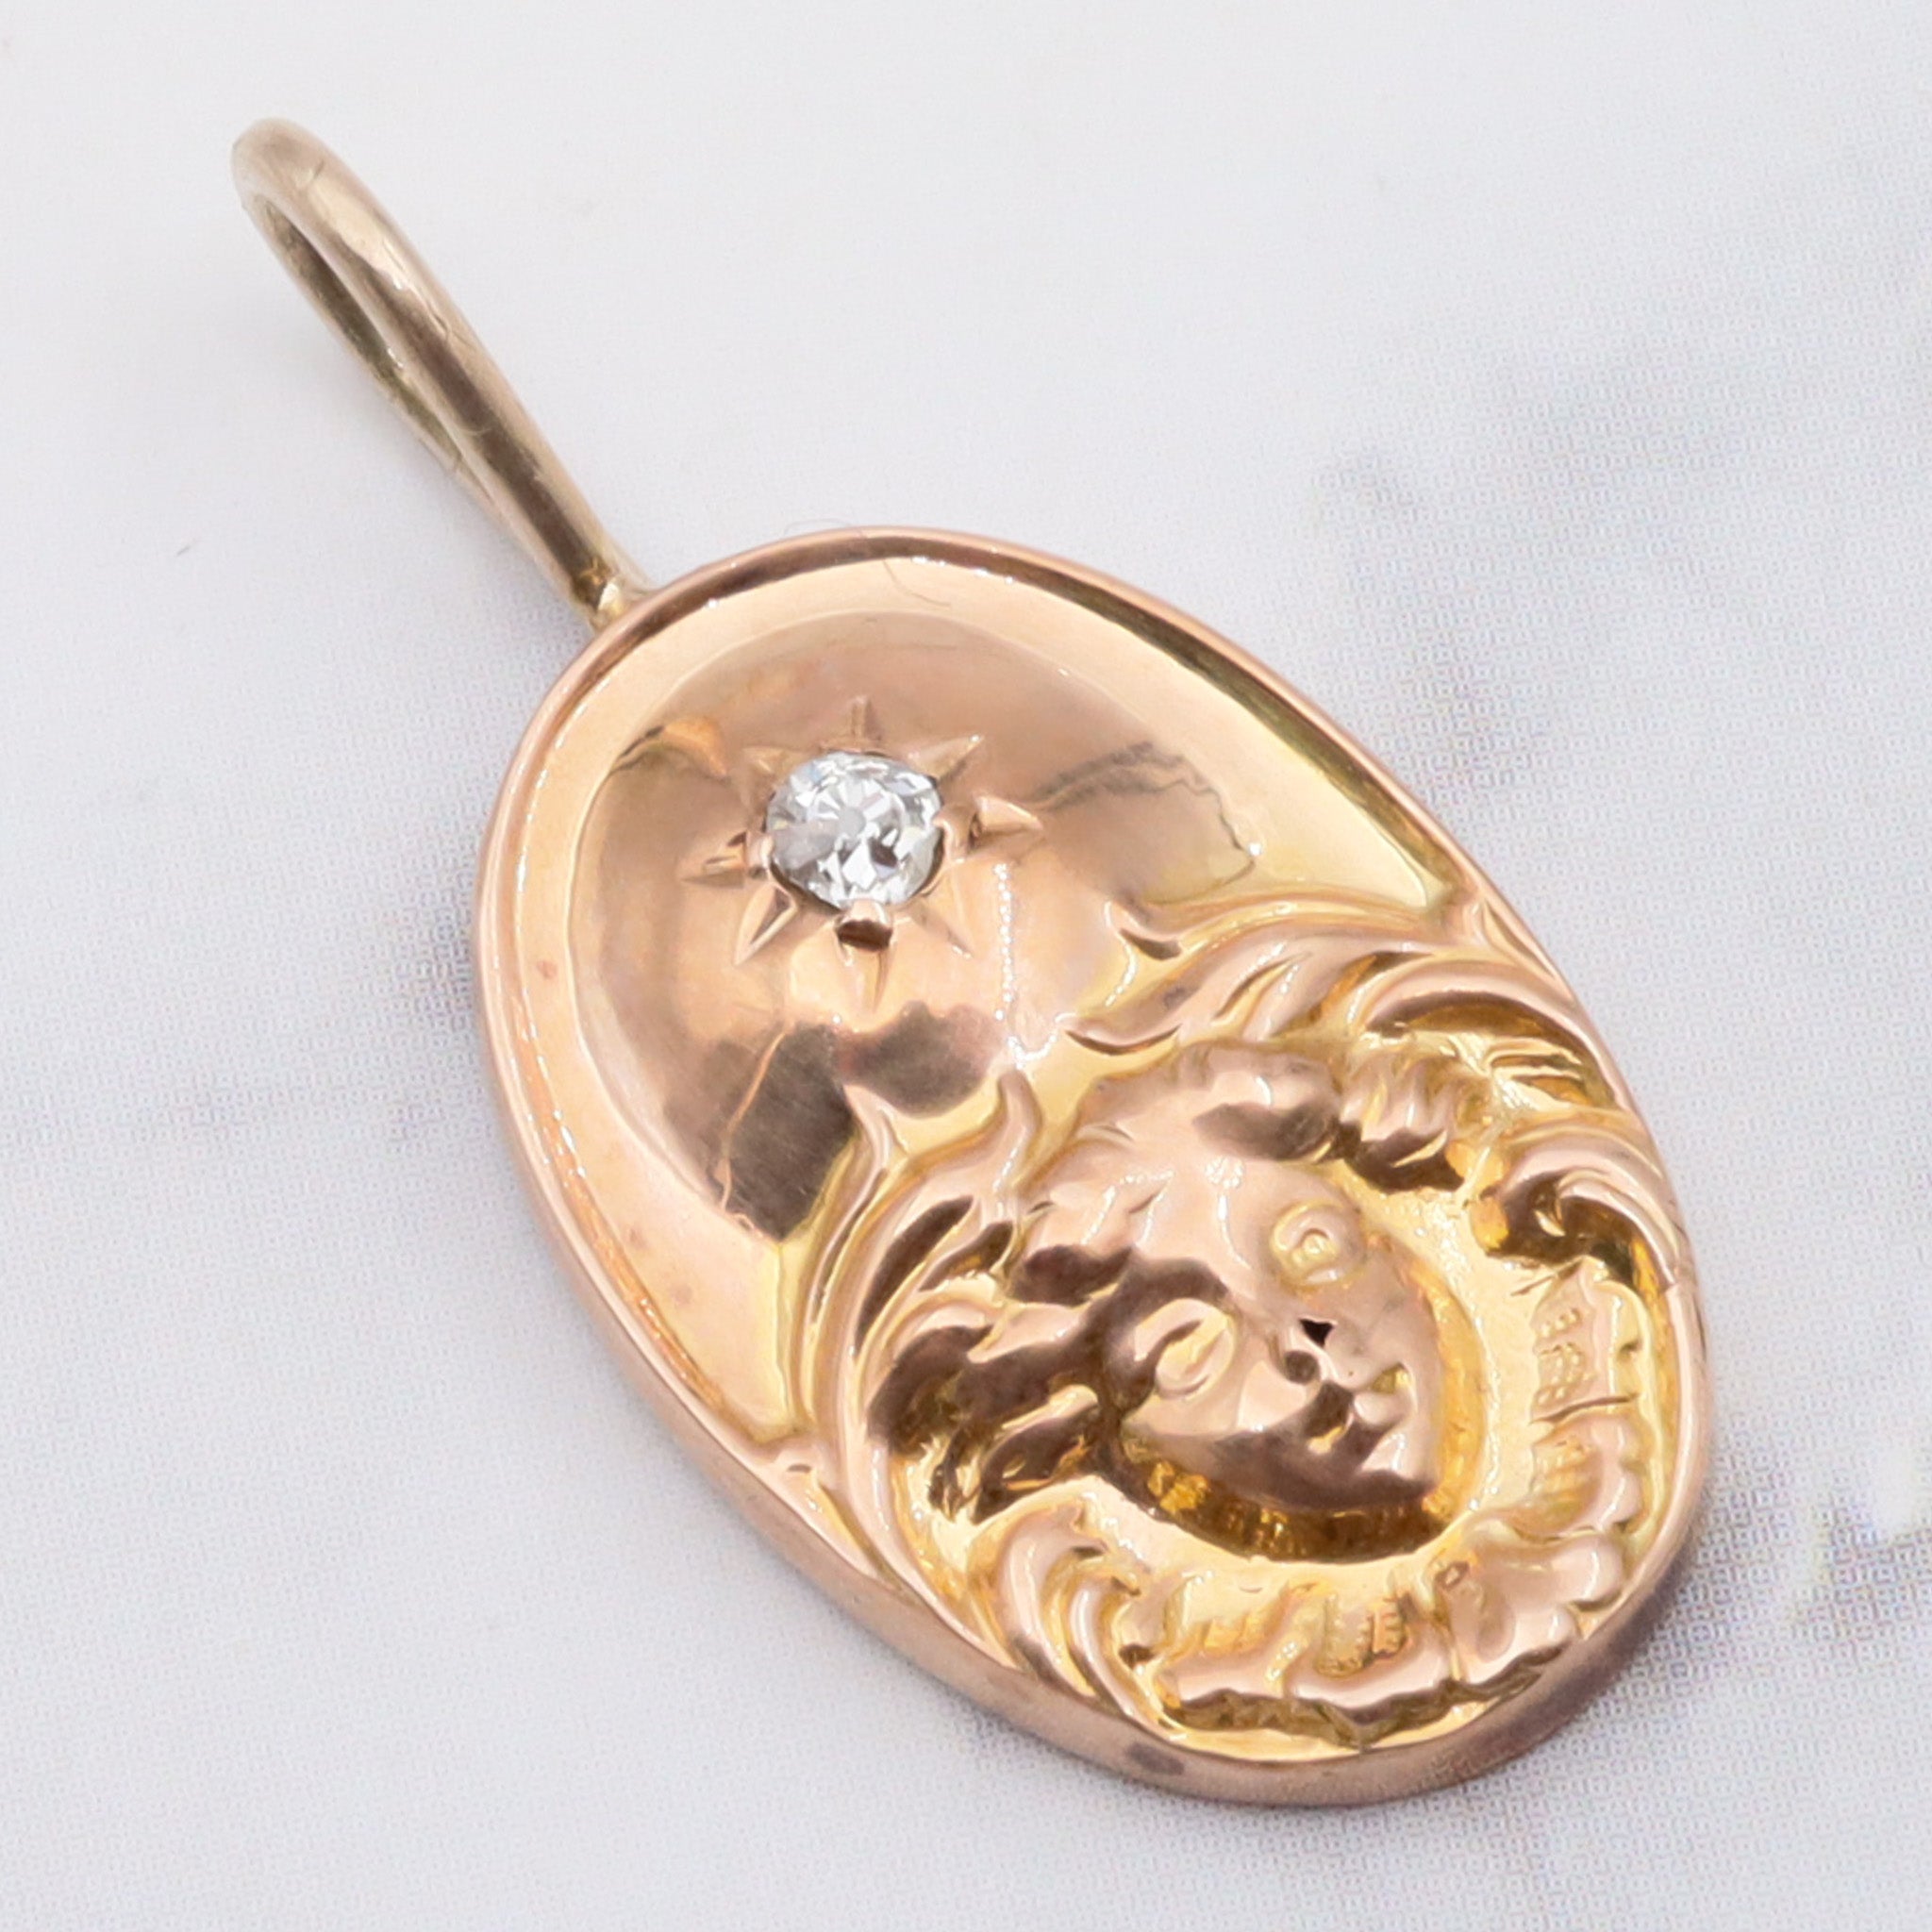 Antique Art Nouveau 14K gold & old mine cut diamond pendant